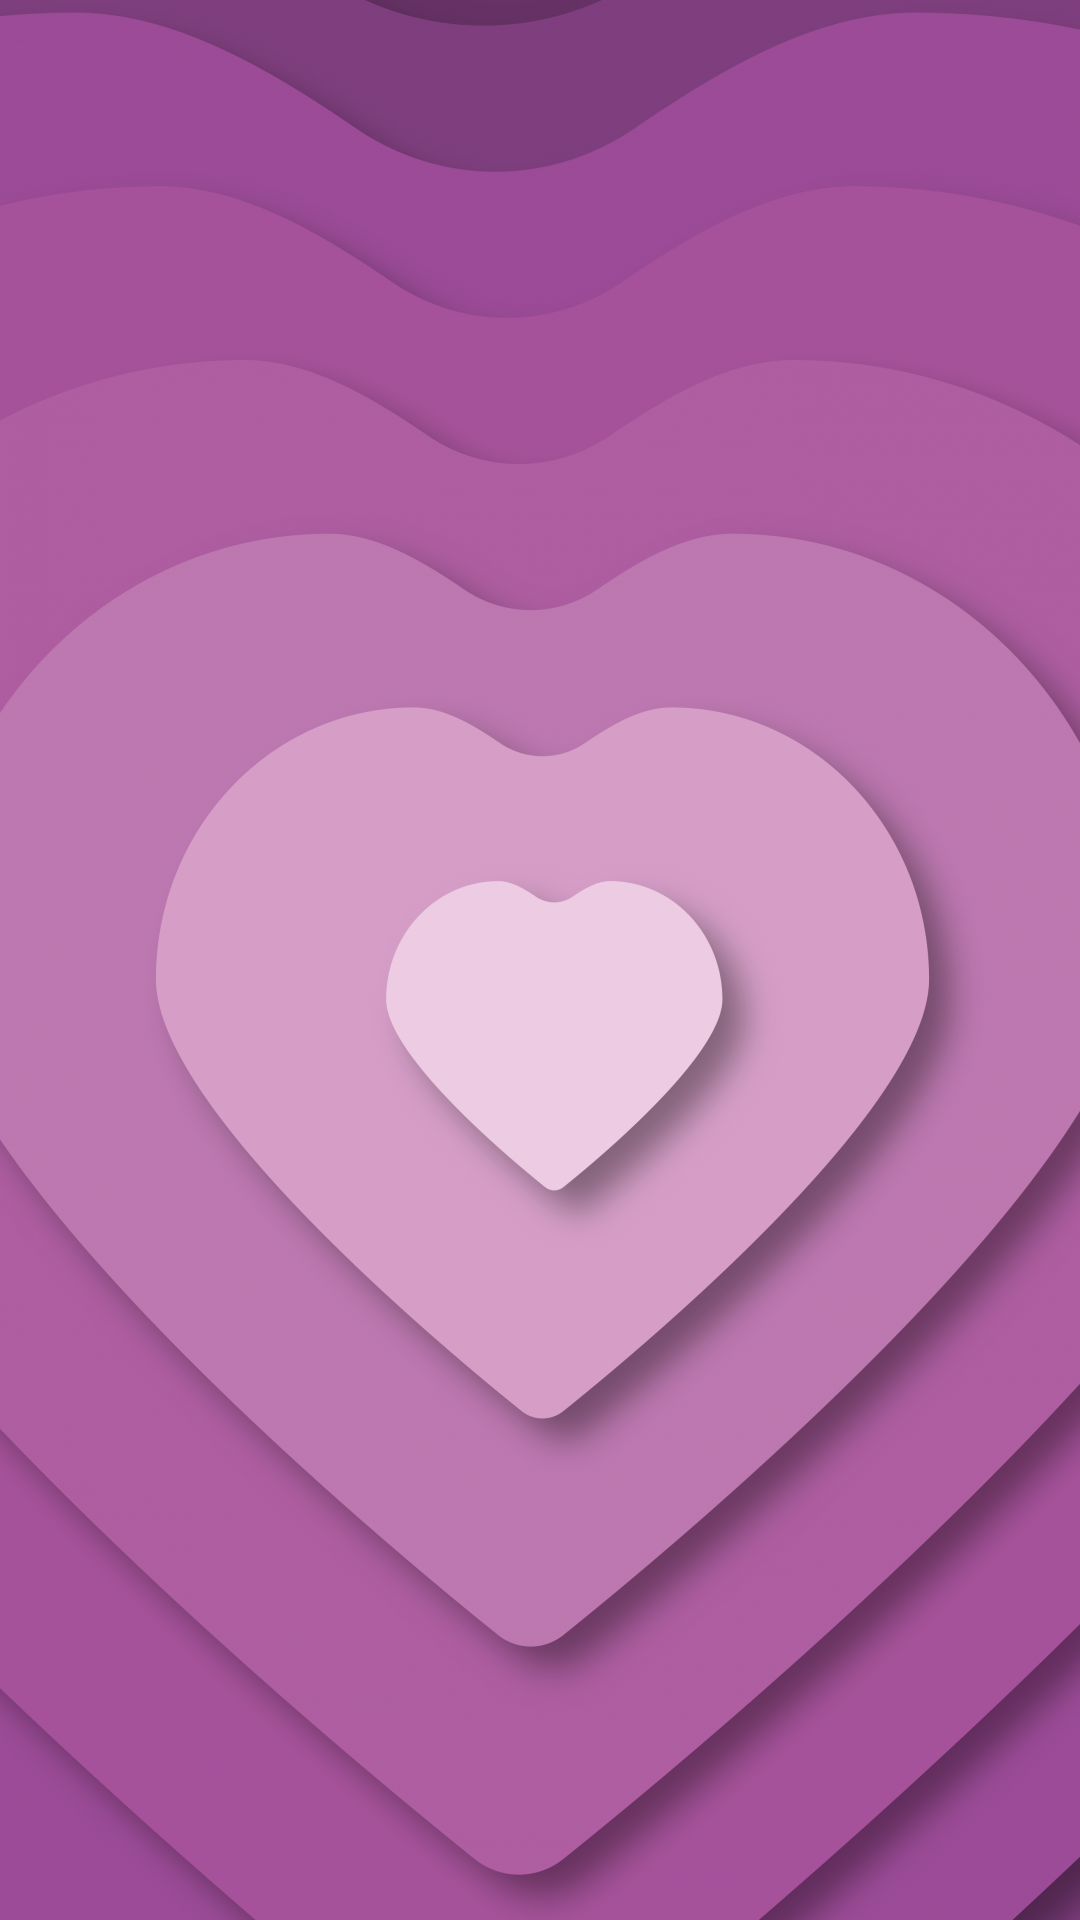 حمل الفيديو på Twitter 17 ideas home screen wallpapers aesthetic purple  httpstcoORQpPfymfp  X